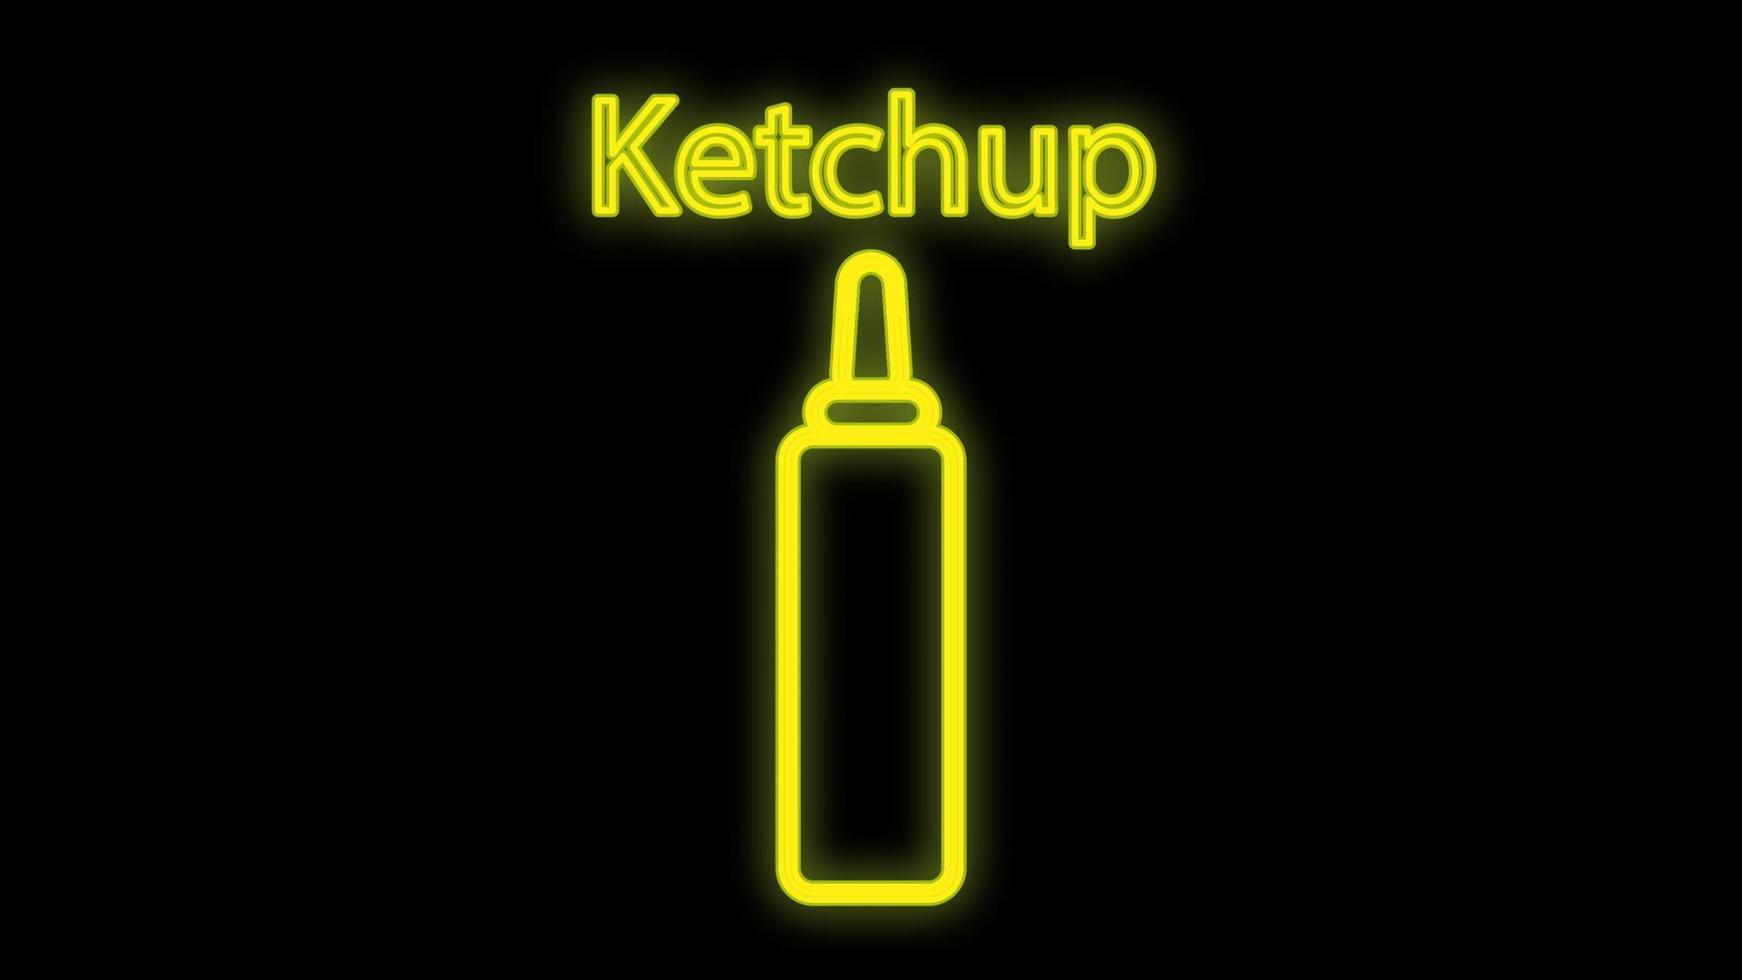 ketchup sur fond noir, illustration vectorielle. enseigne au néon avec l'inscription ketchup. jaune fluo. enseigne inhabituelle pour un café, restaurant. décor pour restauration rapide vecteur